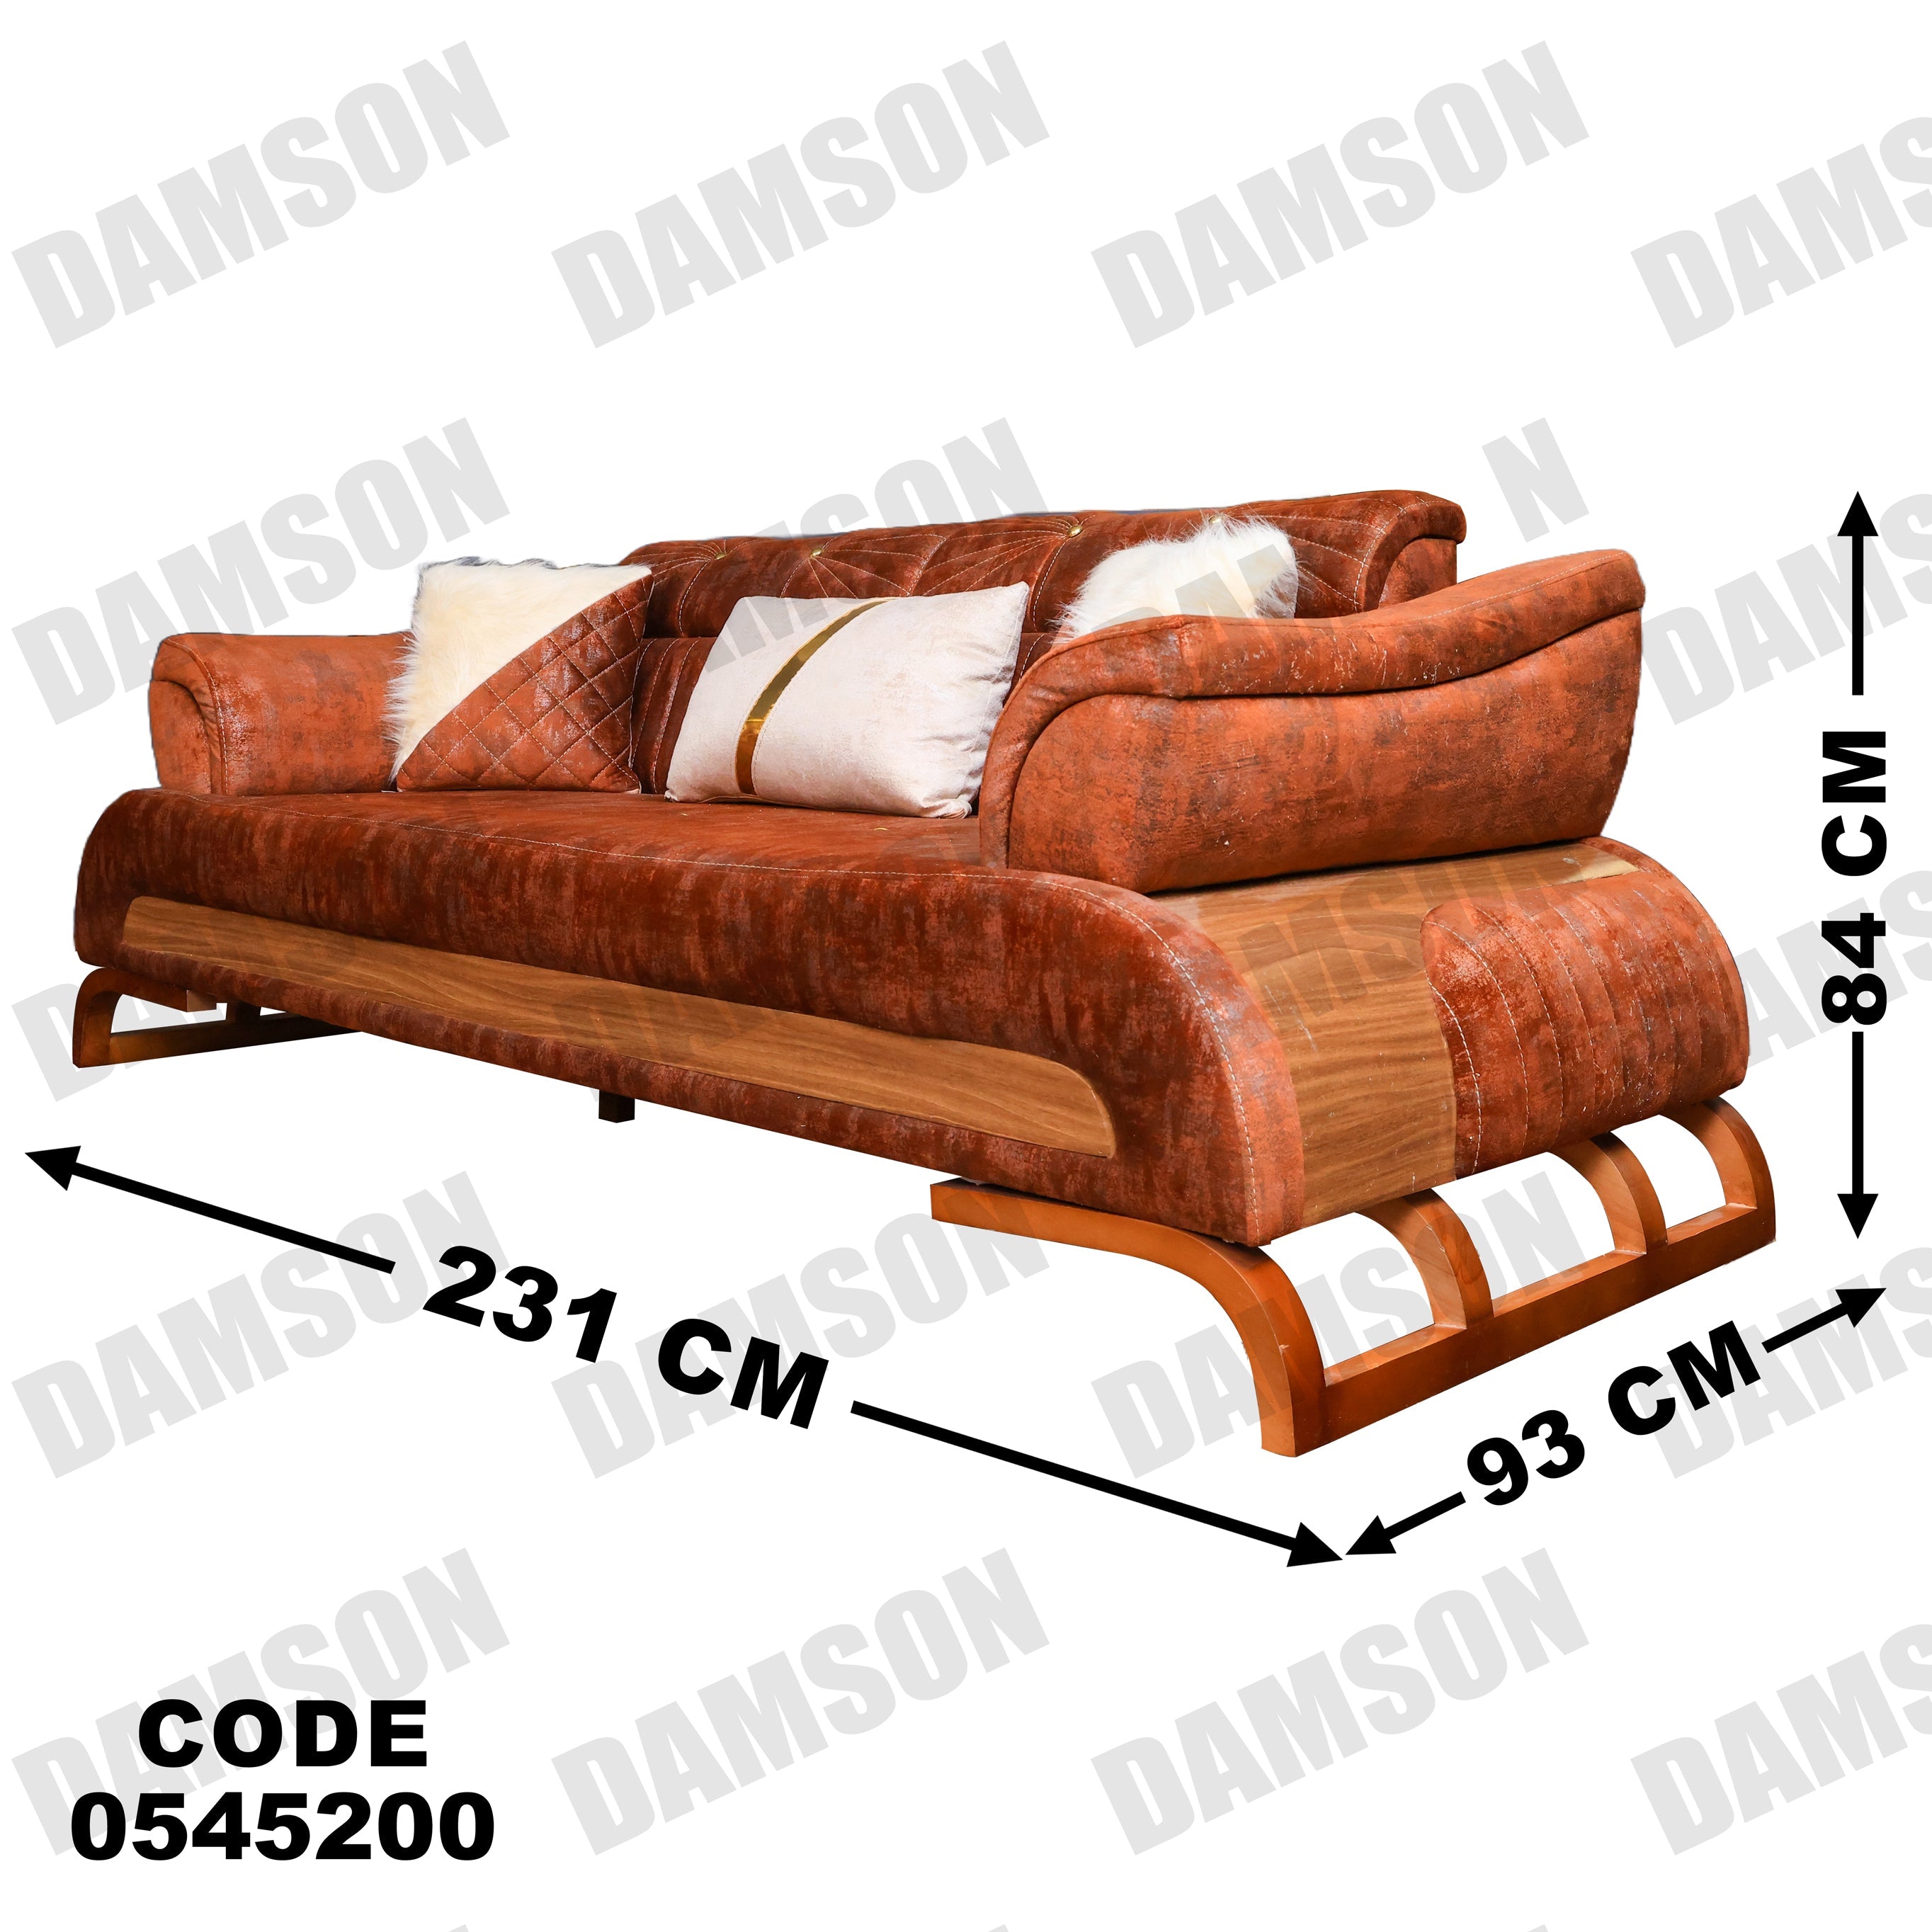 انترية 452 - Damson Furnitureانترية 452